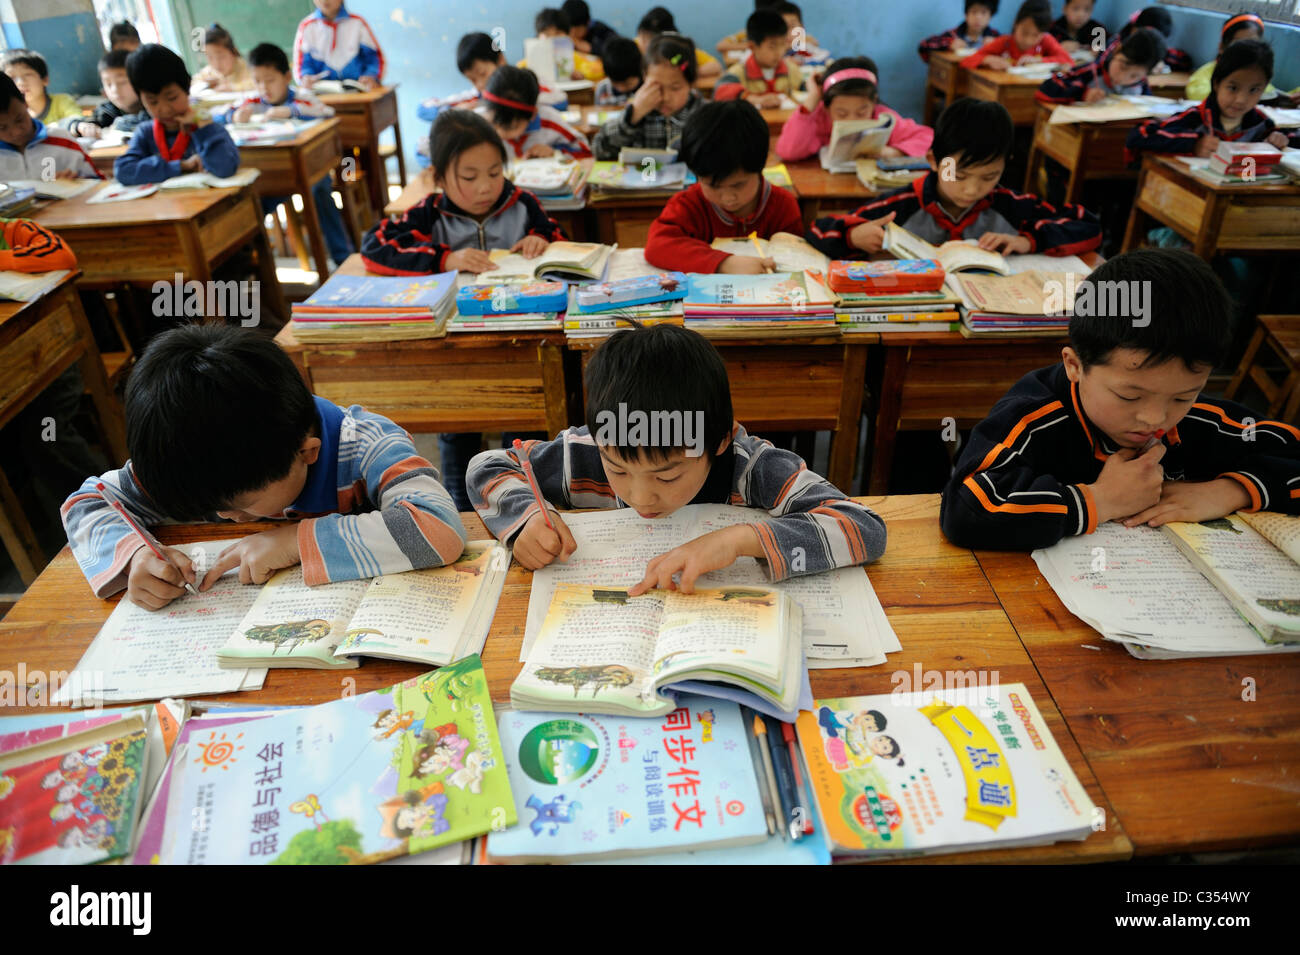 Les élèves fréquentent l'école primaire en Chine en classe en campagne à distance Duan county, Guangxi, Chine. 20-Apr-2011 Banque D'Images